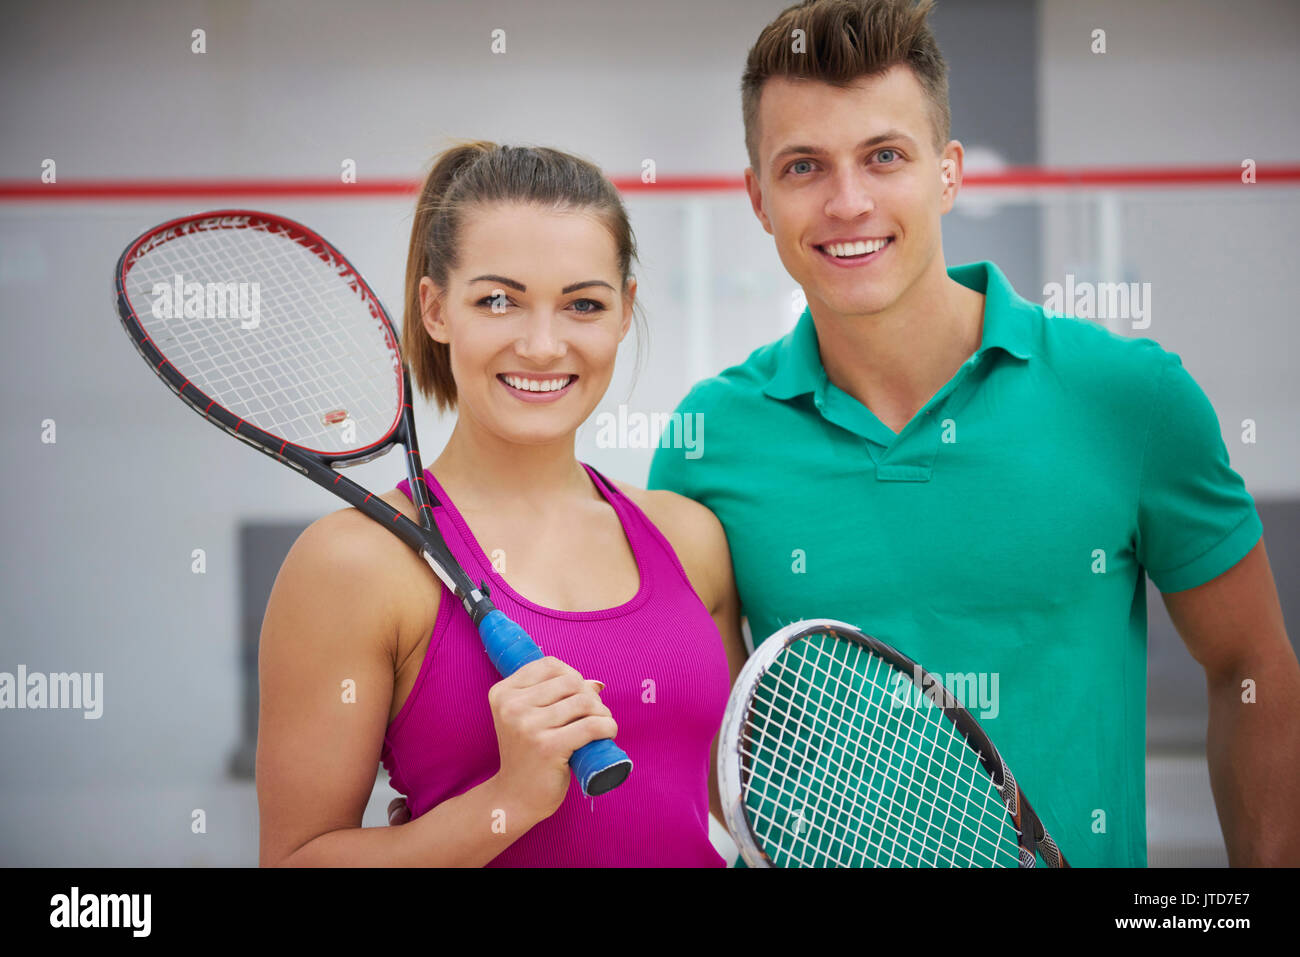 Young people and sport. Сквош женщины. В чем играют в сквош женщины. Squash photo stock. Сквош парный мужчина и женщина.